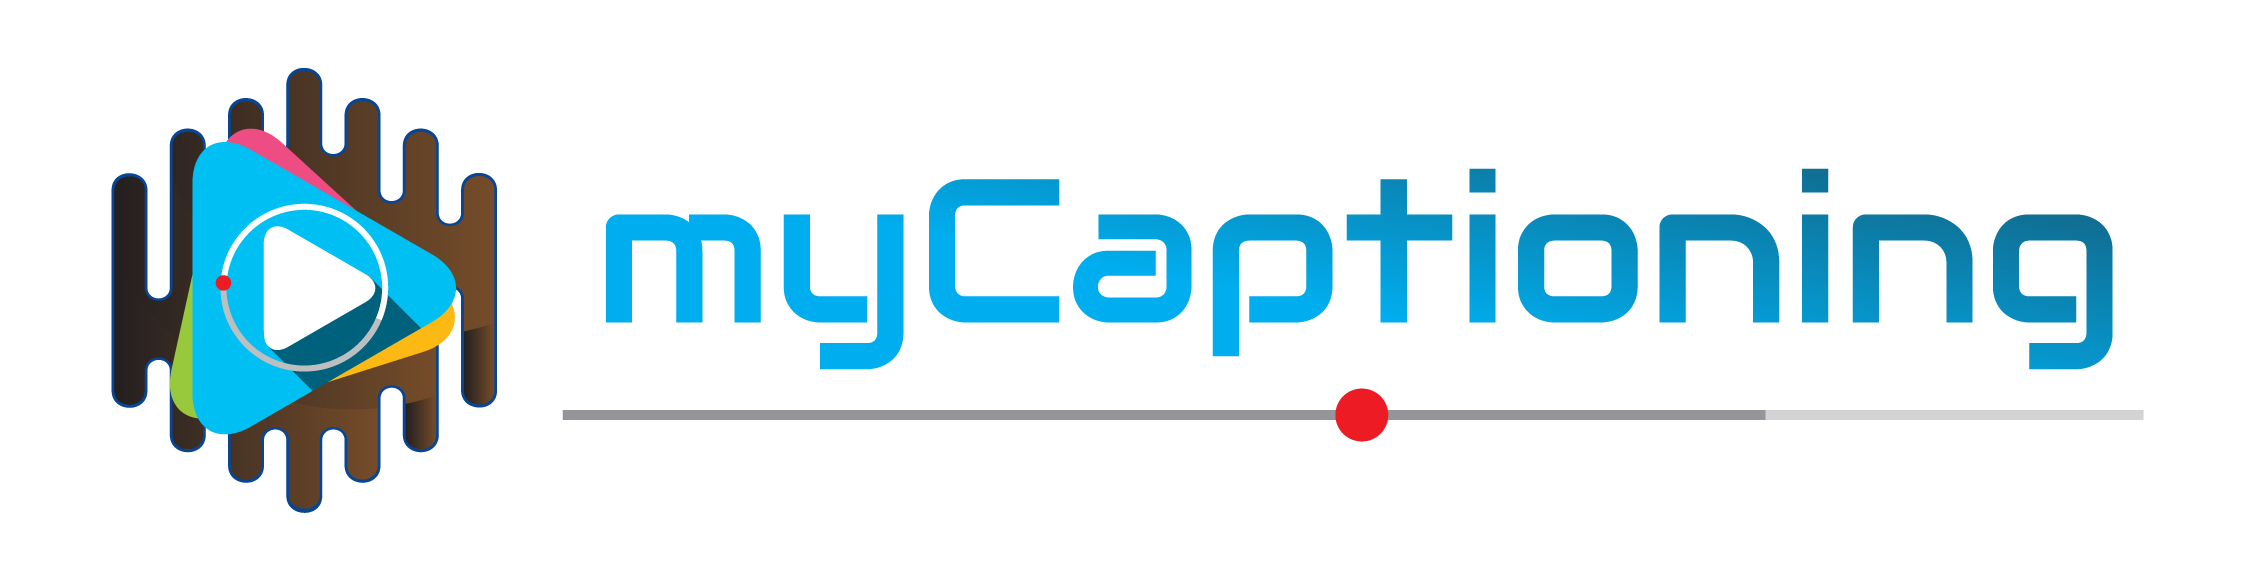 MyCaptioning logo